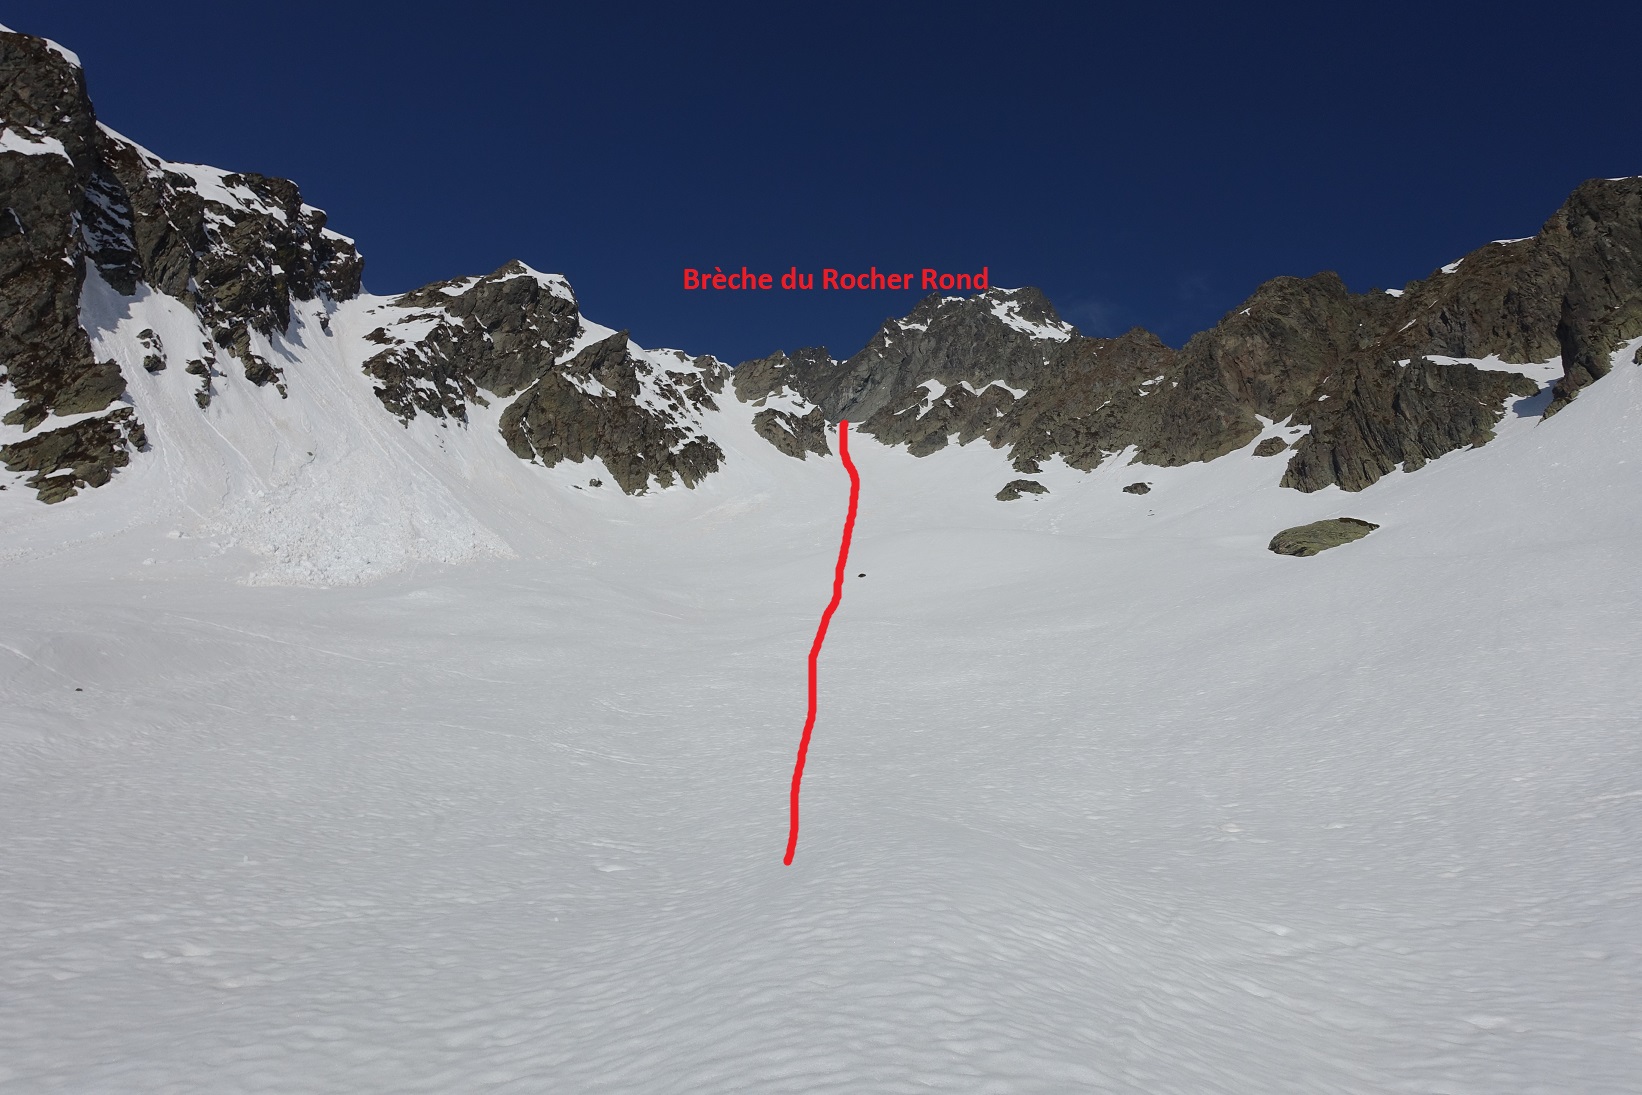 Brèche du Rocher Rond en vue (Brèche à 2550m environ)